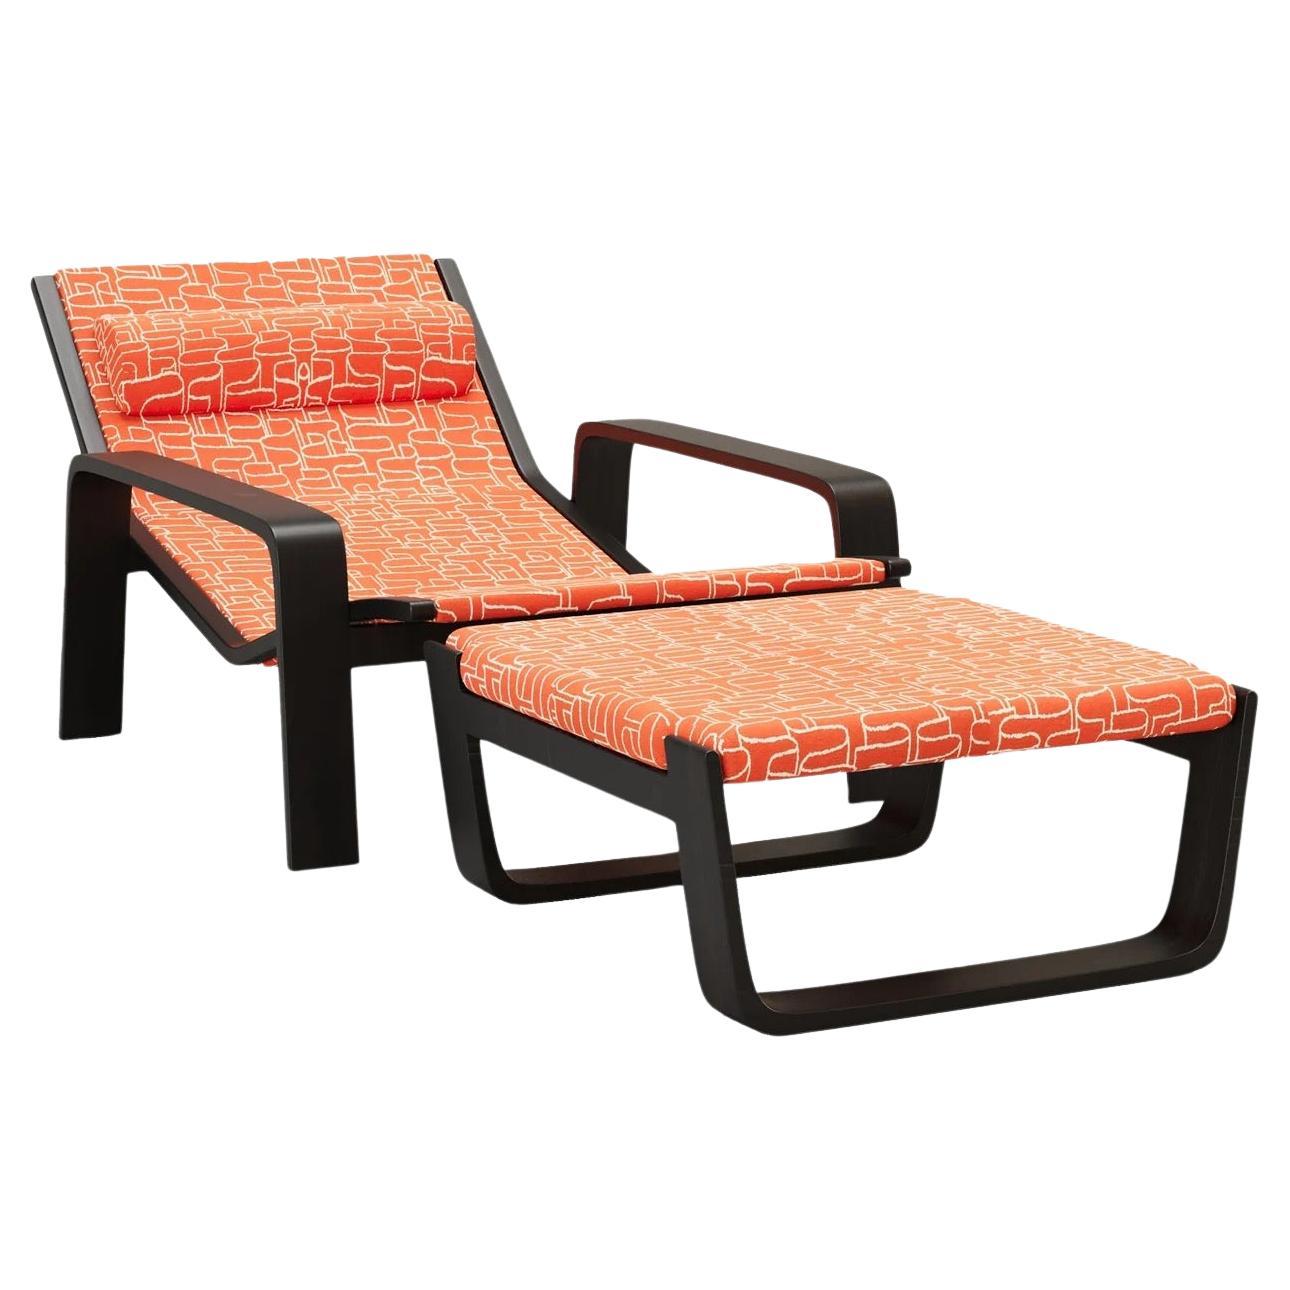 LA FIDÈLE Chair in Orange by Alexandre Ligios, REP by Tuleste Factory